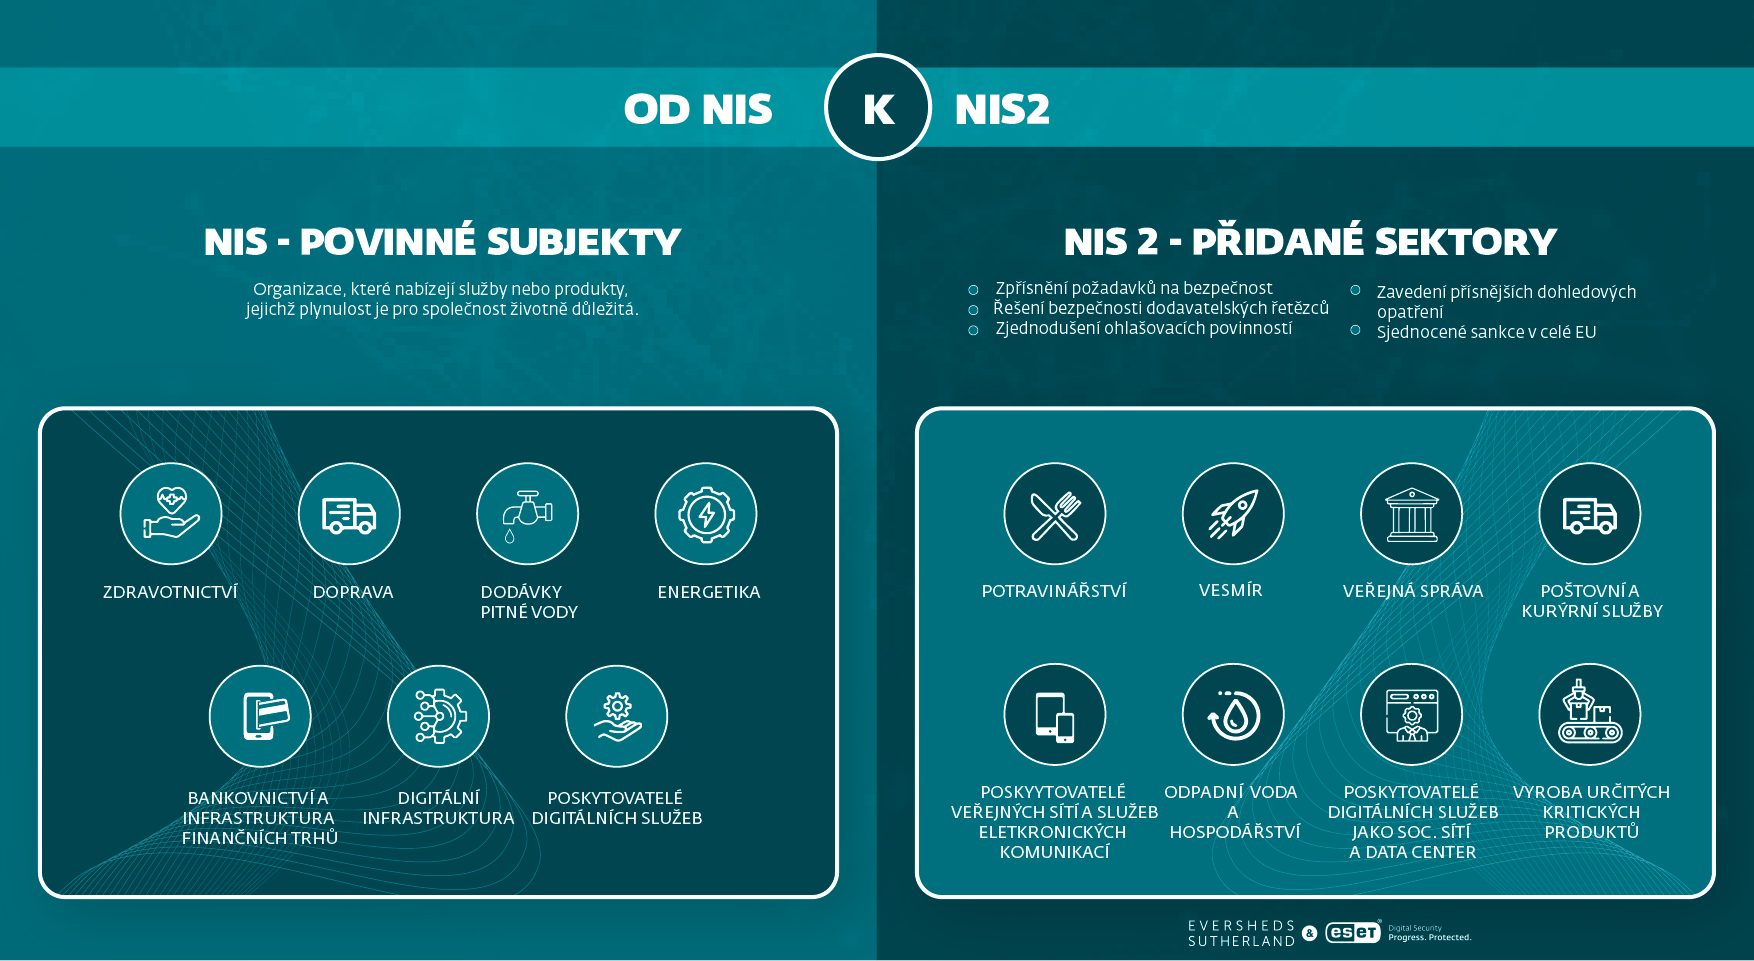 NIS2 přidané sektory